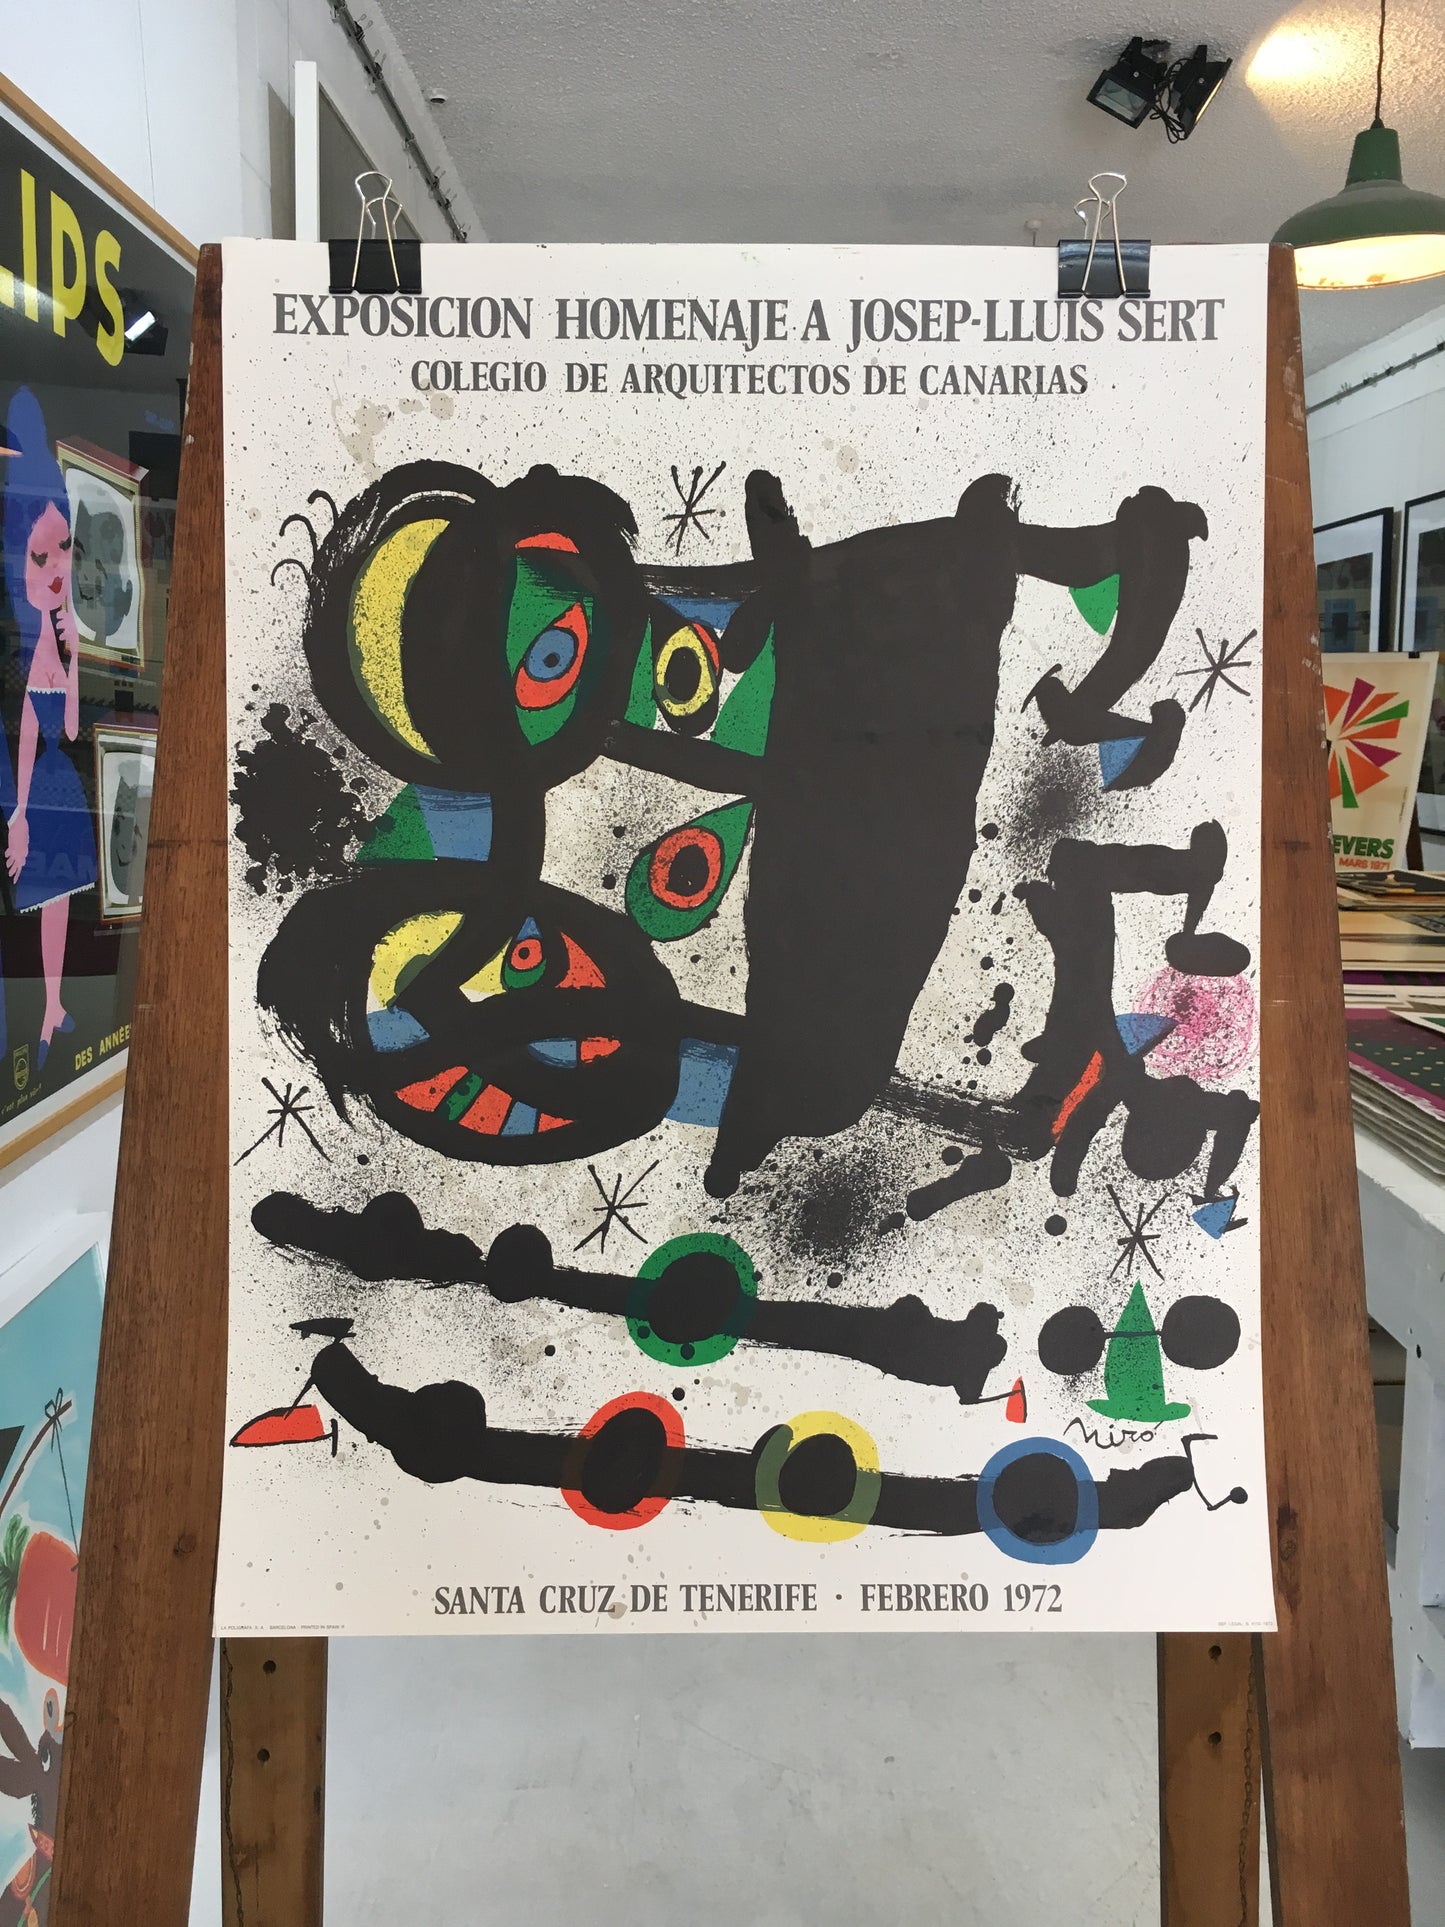 Exposicion Homenaje by Joan Miro